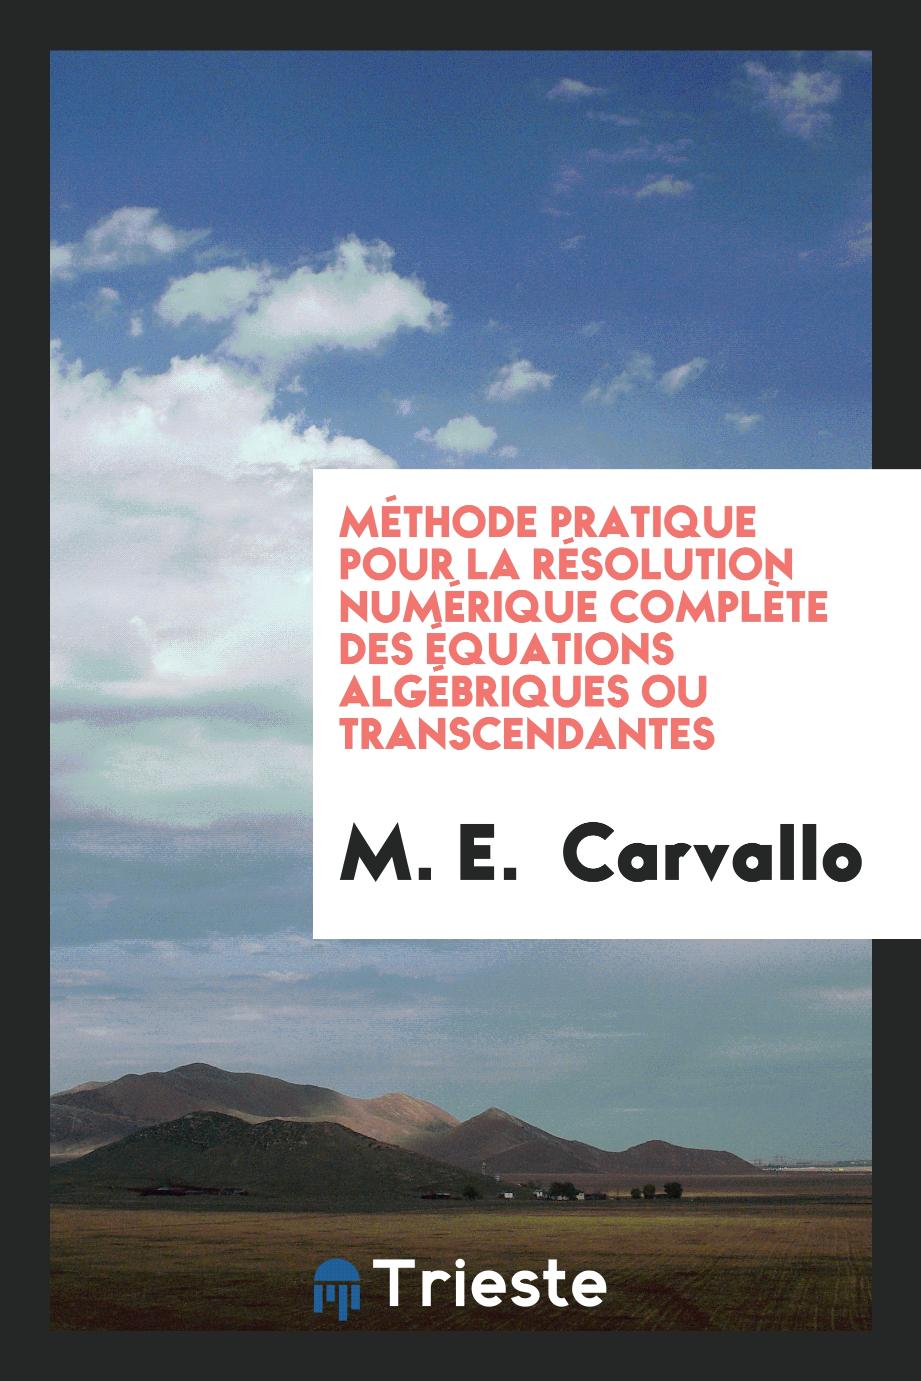 Méthode Pratique pour la Résolution Numérique Complète des Équations Algébriques ou Transcendantes